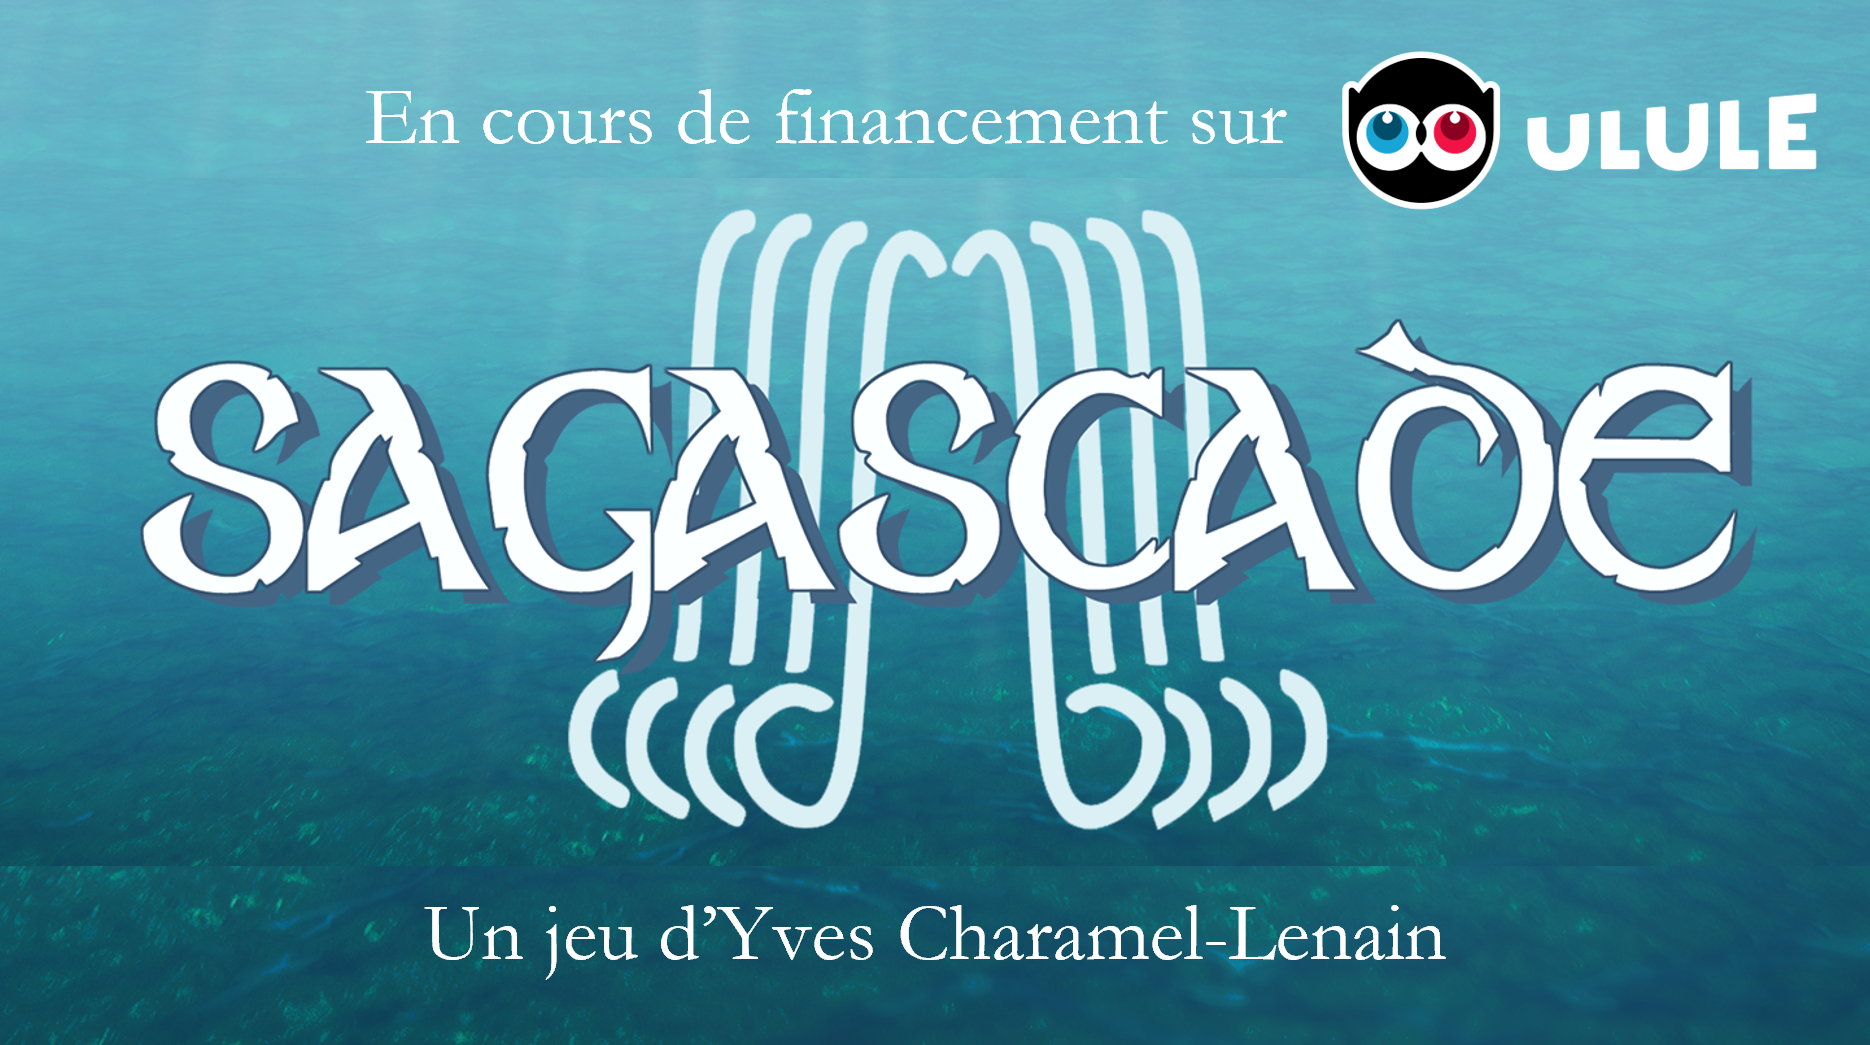 Le jeu Sagascade de Yves Charamel-Lenain est en cours de financement participatif sur Ulule